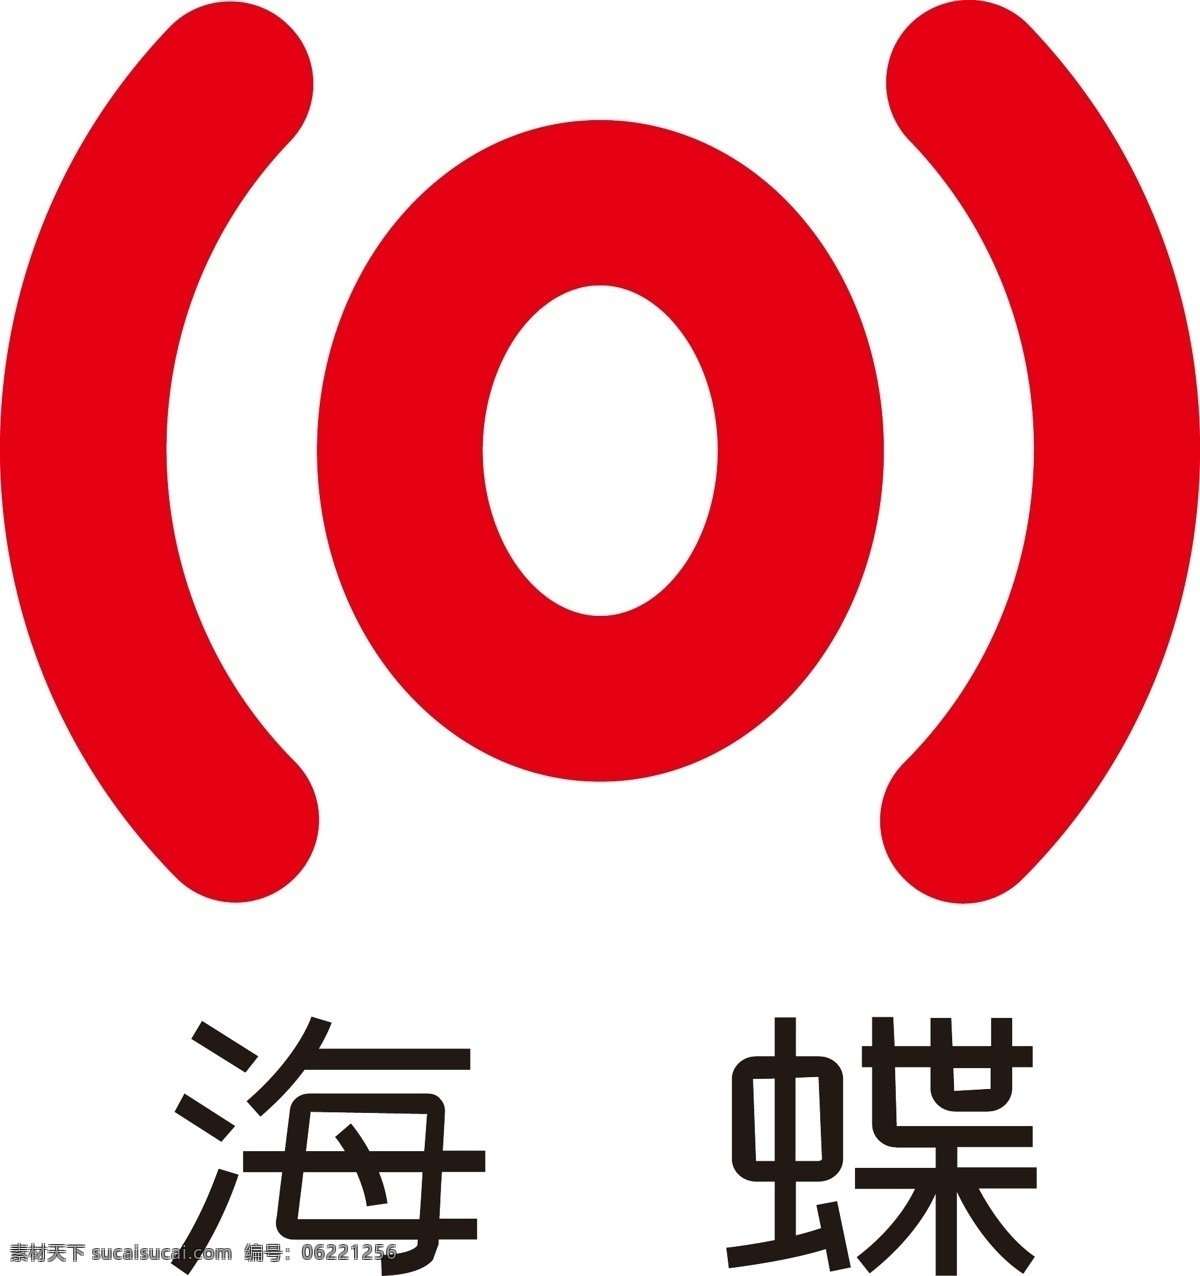 海蝶 唱片 logo 海蝶唱片 红色 出版 薛之谦 许嵩 音乐 歌曲 制作 标志图标 企业 标志